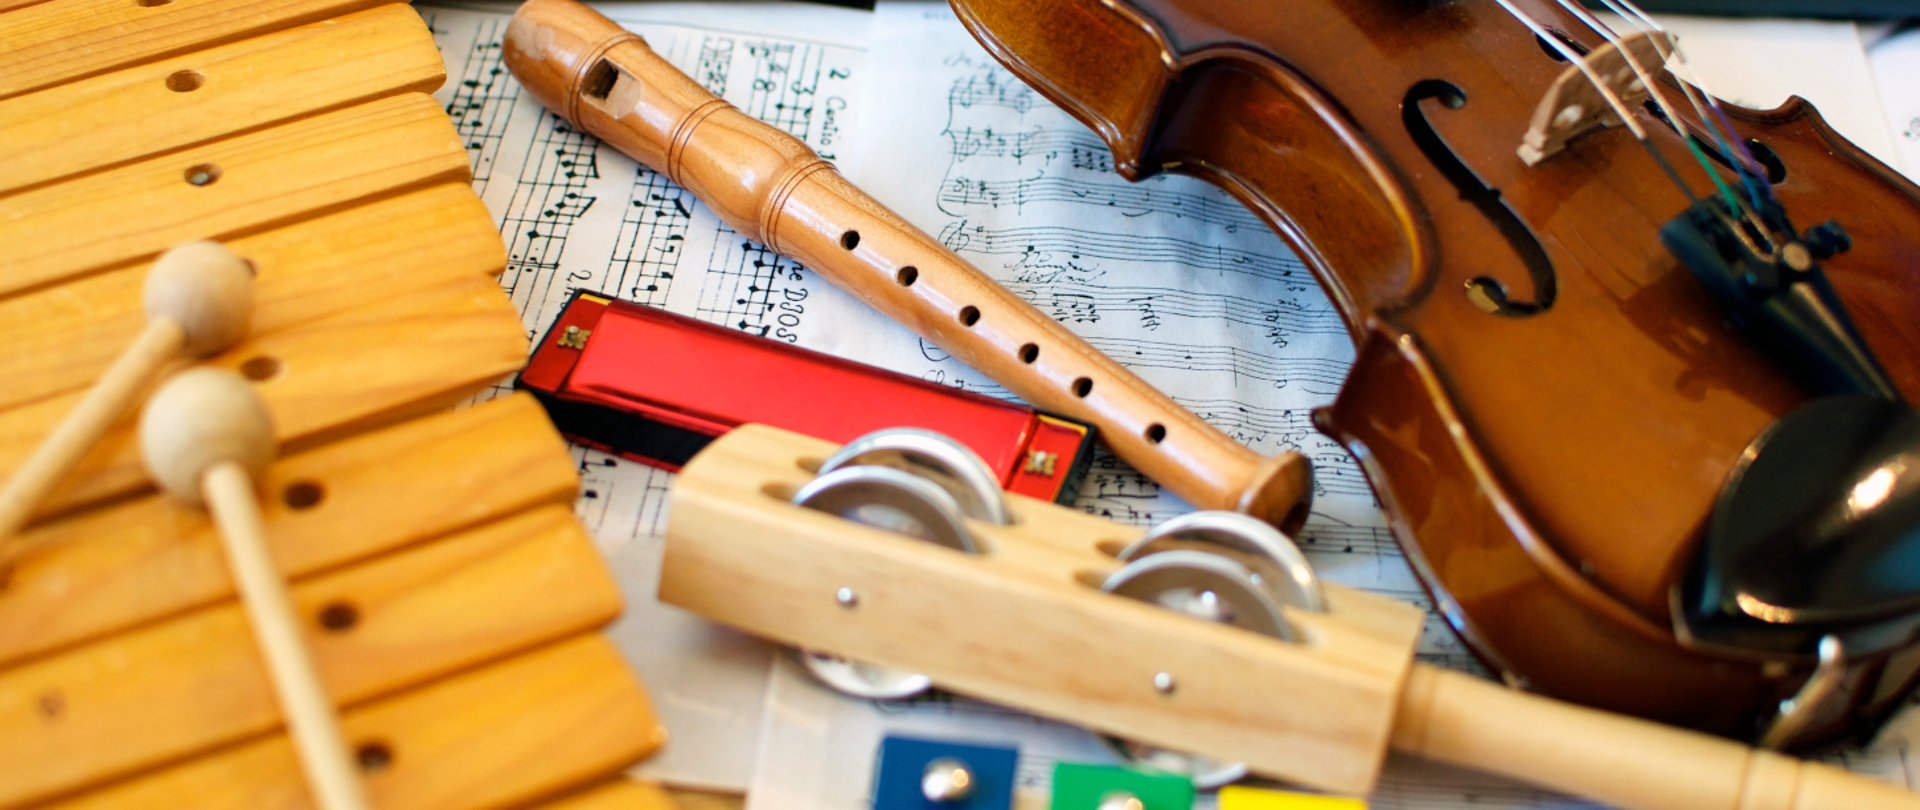 Zdjęcie przedstawia instrumenty muzyczne: skrzypce, flet prosty, harmonijkę ustną oraz instrumenty perkusyjne na tle zapisu nutowego.